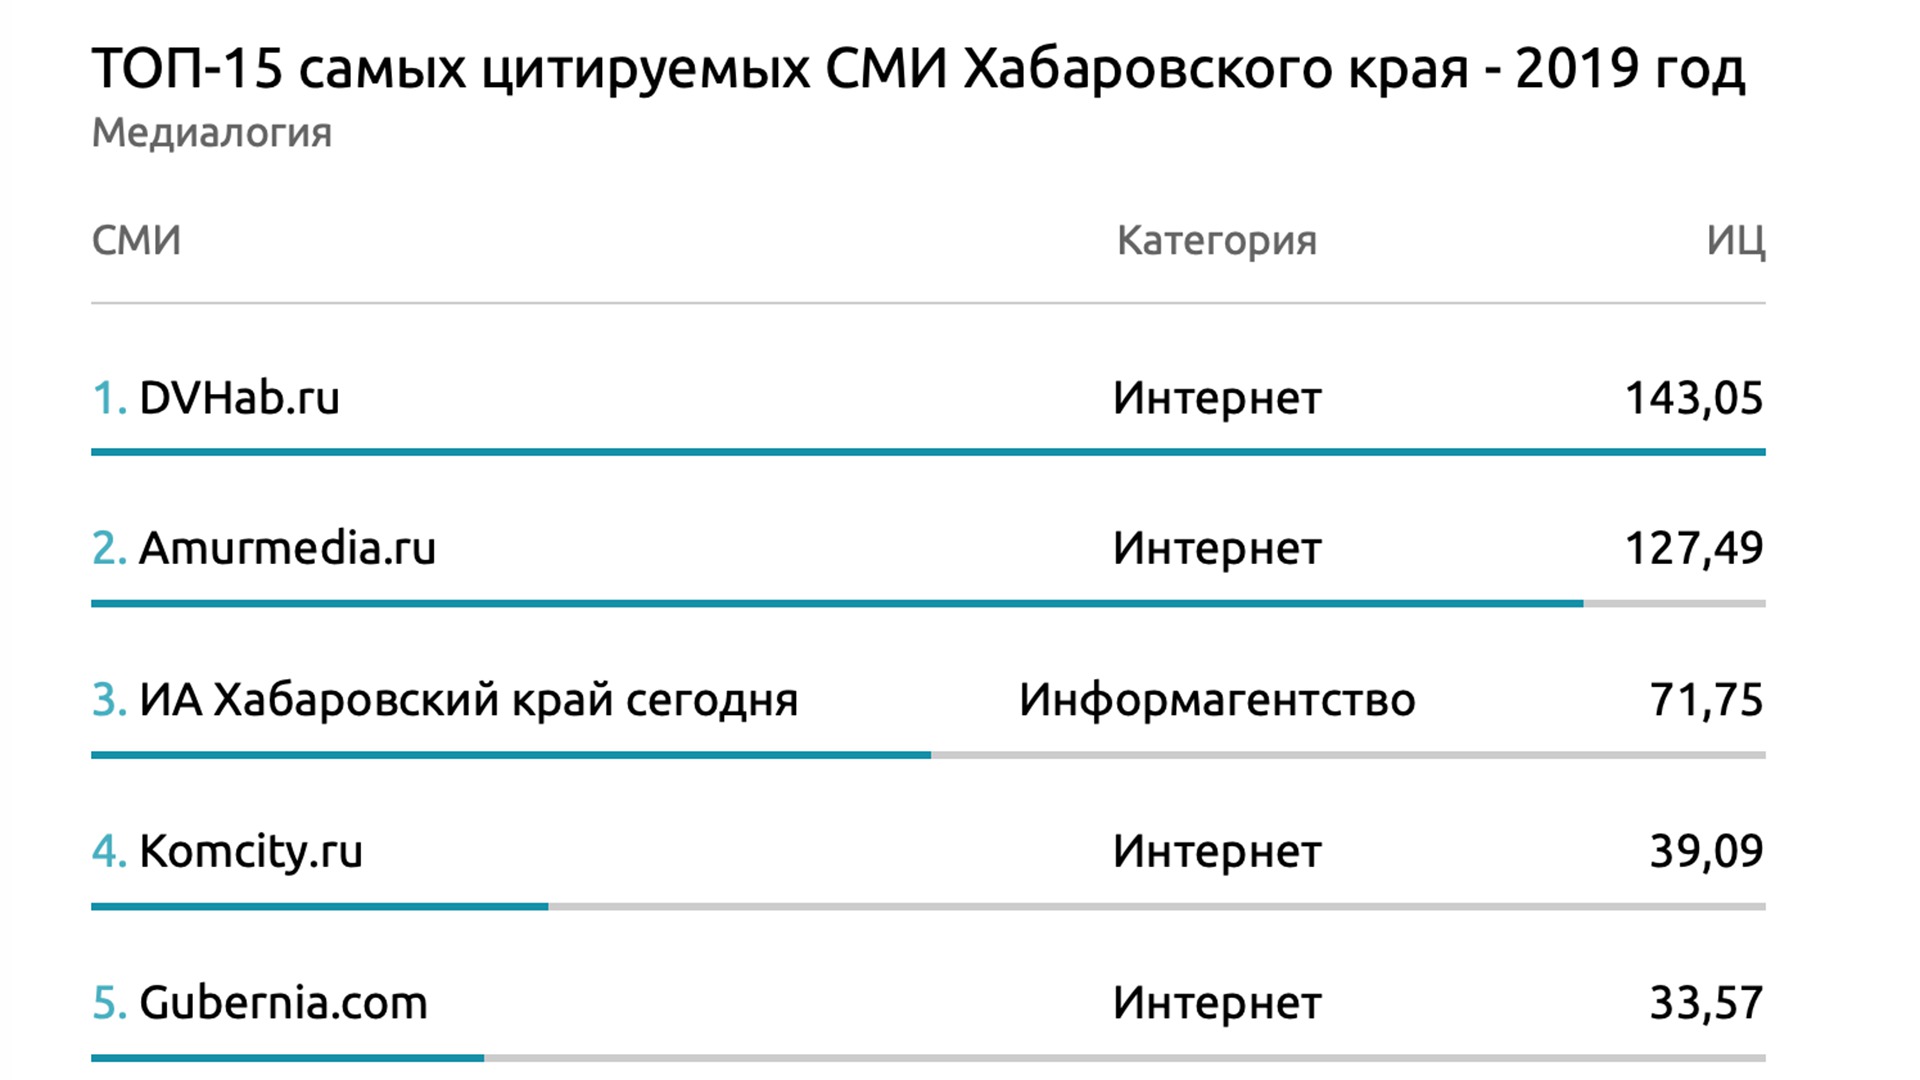 Сайт komcity.ru попал в Топ-5 самых цитируемых СМИ Хабаровского края за 2019-й год